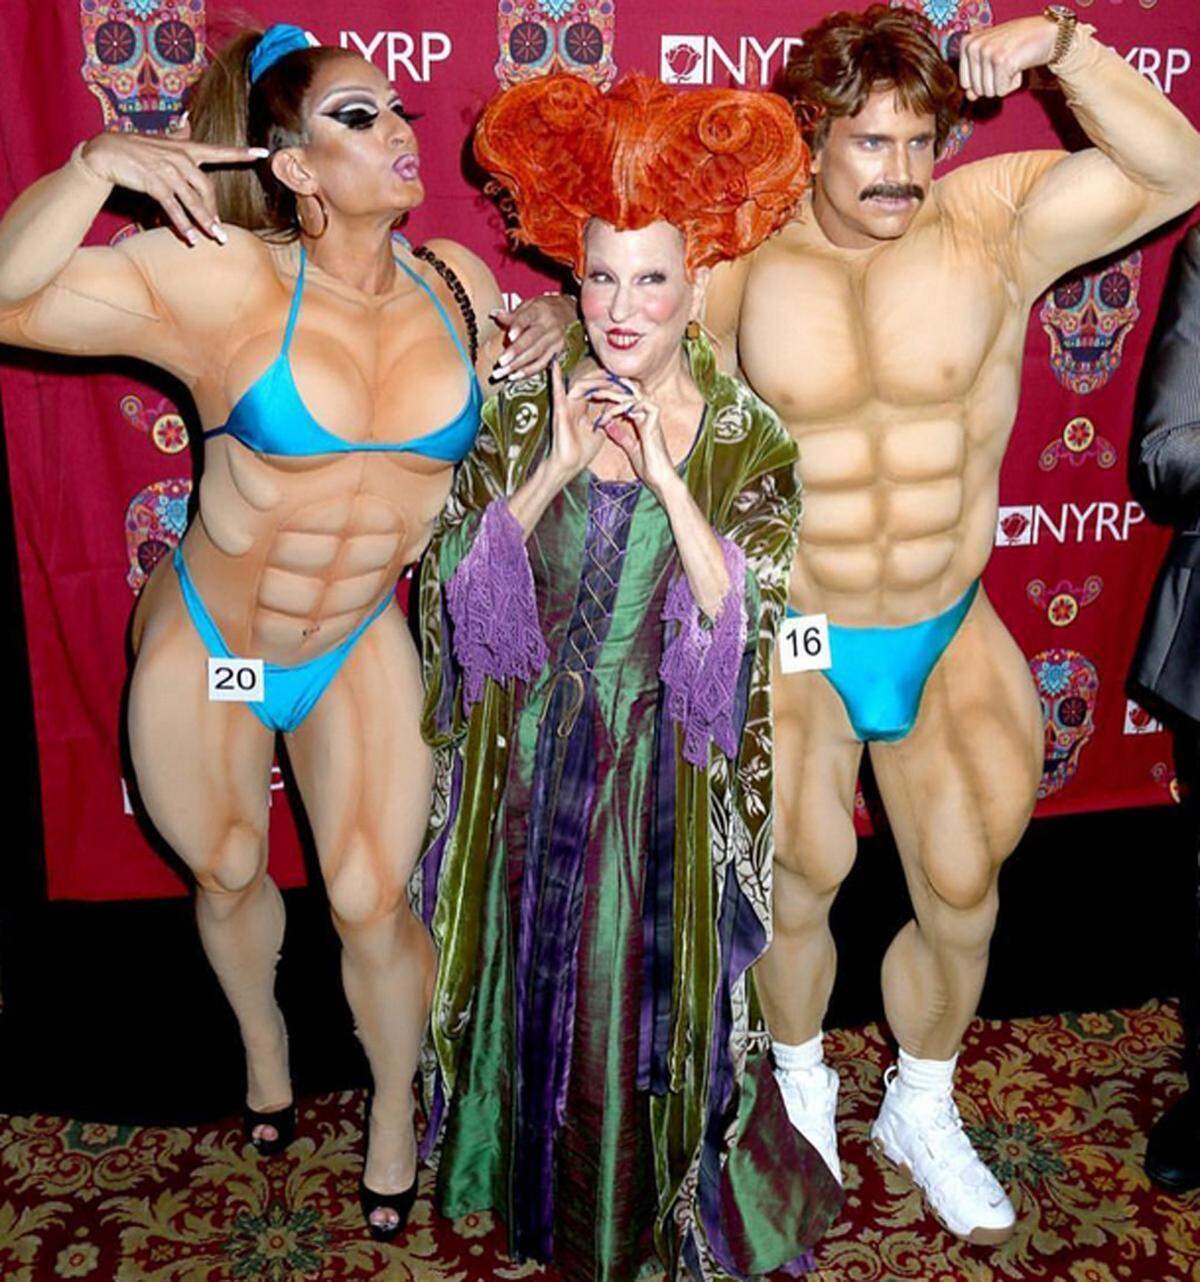 Marc Jacobs gefiel sich als Bodybuilderin, Bette Midler schlüpfte nochmals in ihr Filmkostüm aus "Hocus Pocus". Fazit: Bette Midler war naturgemäß sehr überzeugend, schließlich spielte sie die Rolle der Hexe bereits 1993. Auch Marc Jacobs machte eine gute Figur.